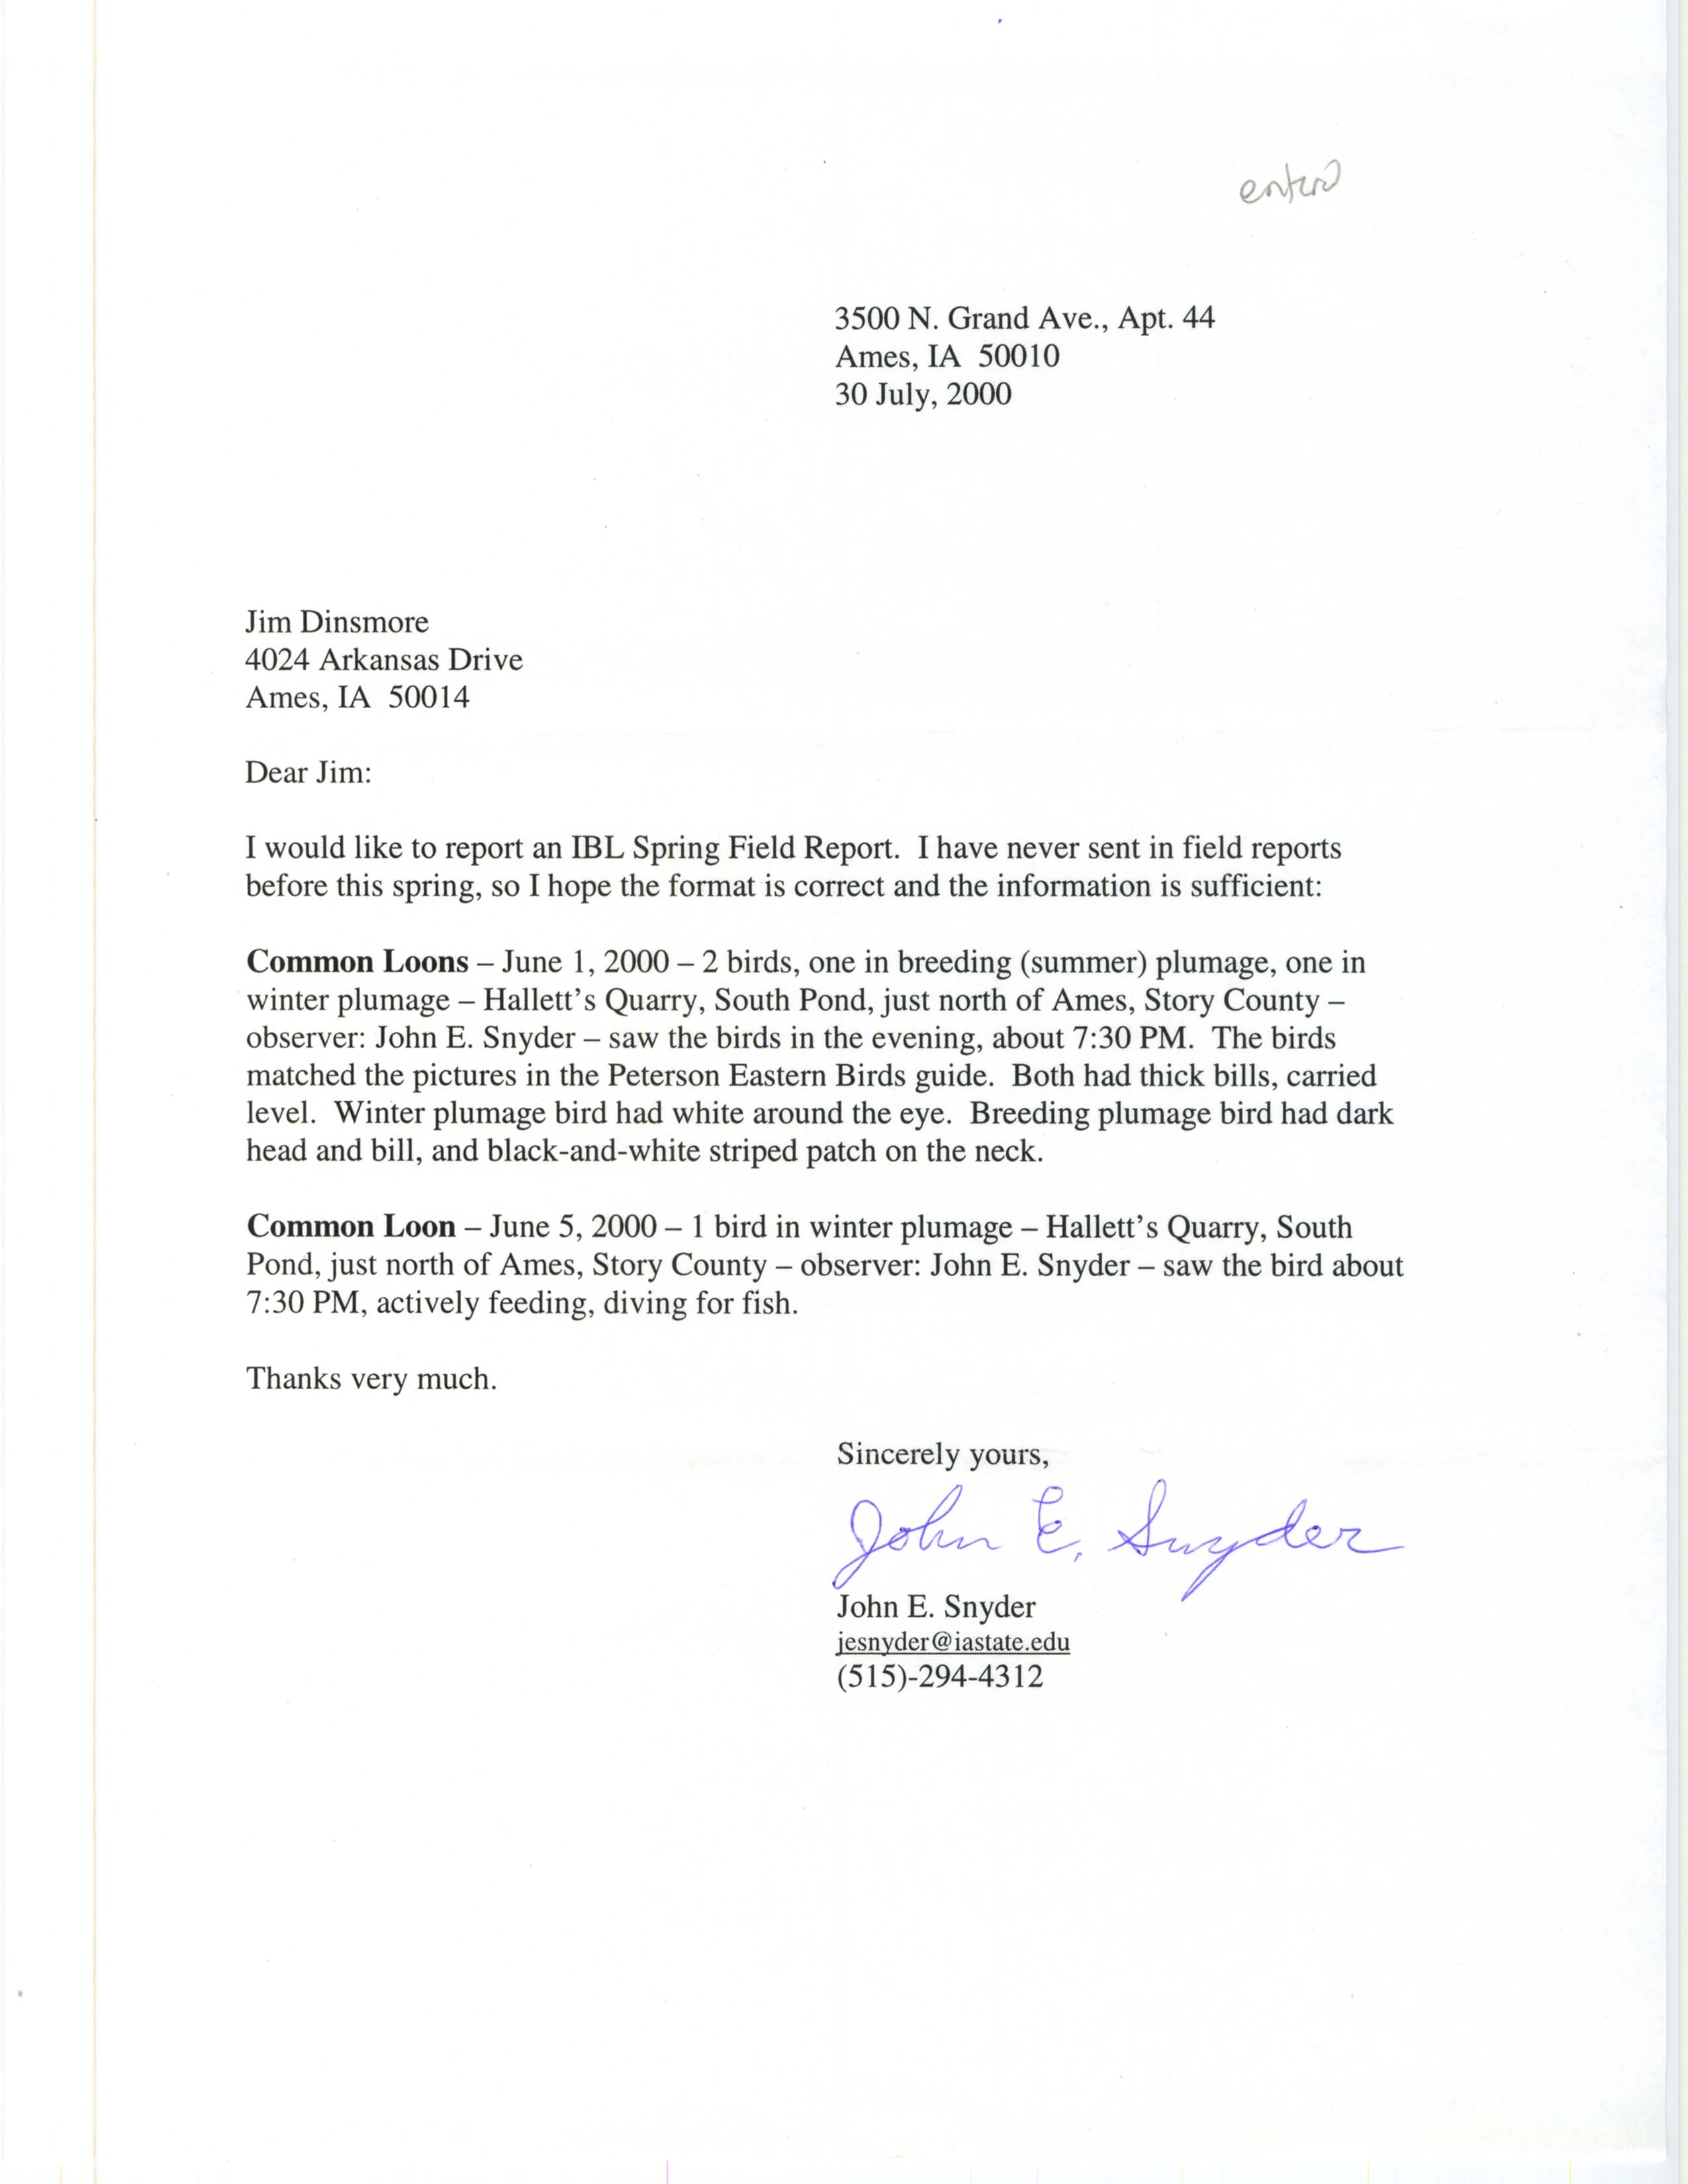 John E. Snyder letter to James J. Dinsmore regarding Common Loon sightings, July 30, 2000